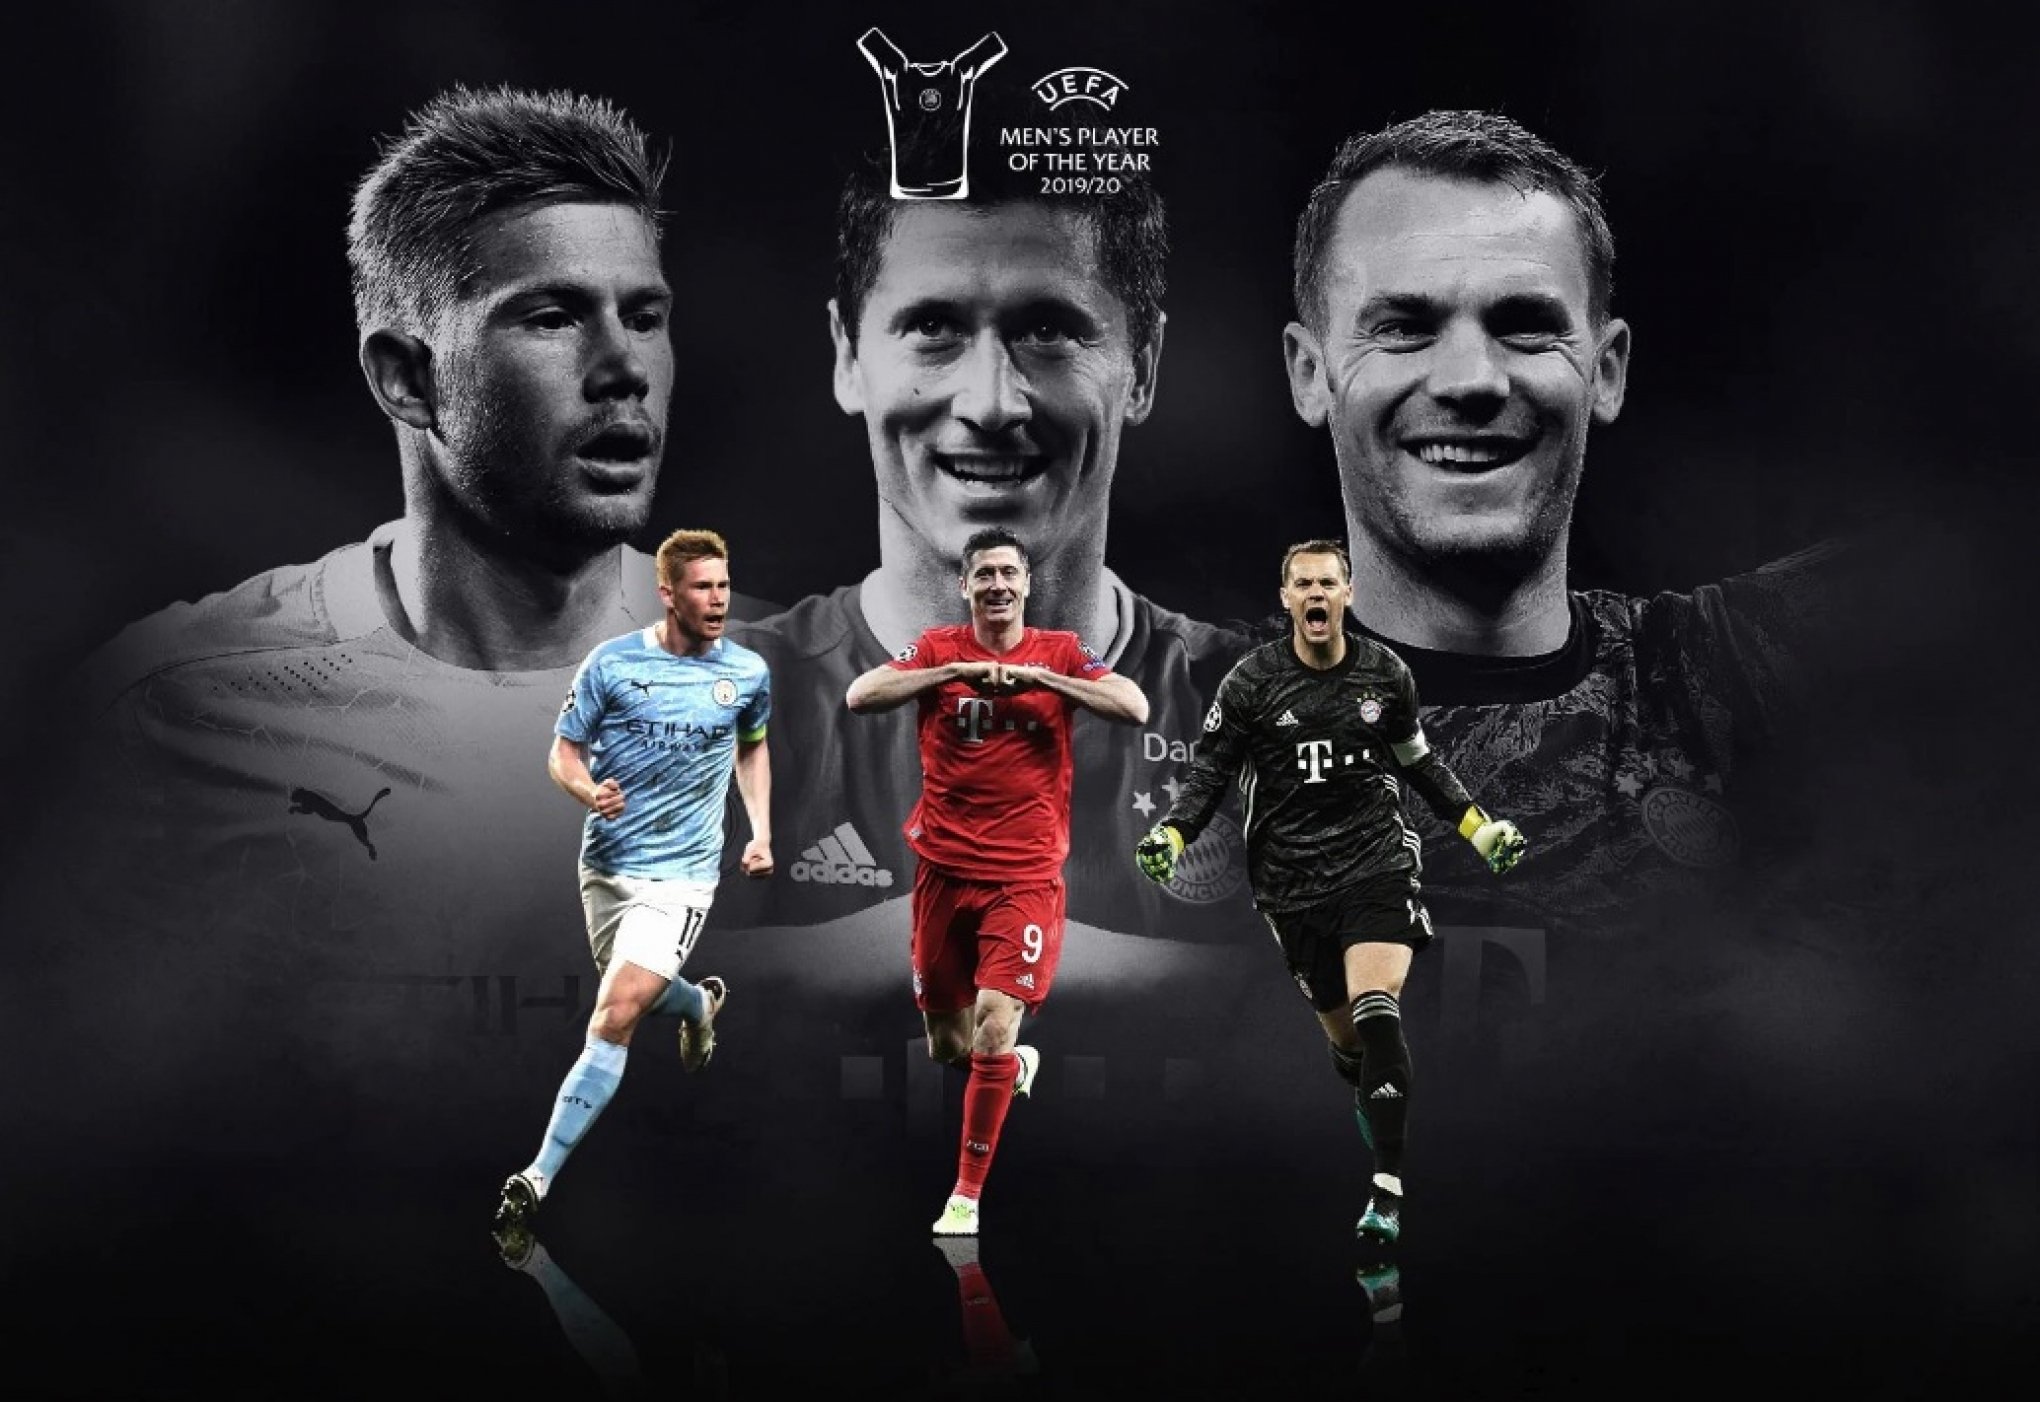 Uefa anuncia os três finalistas ao prêmio de melhor do ano